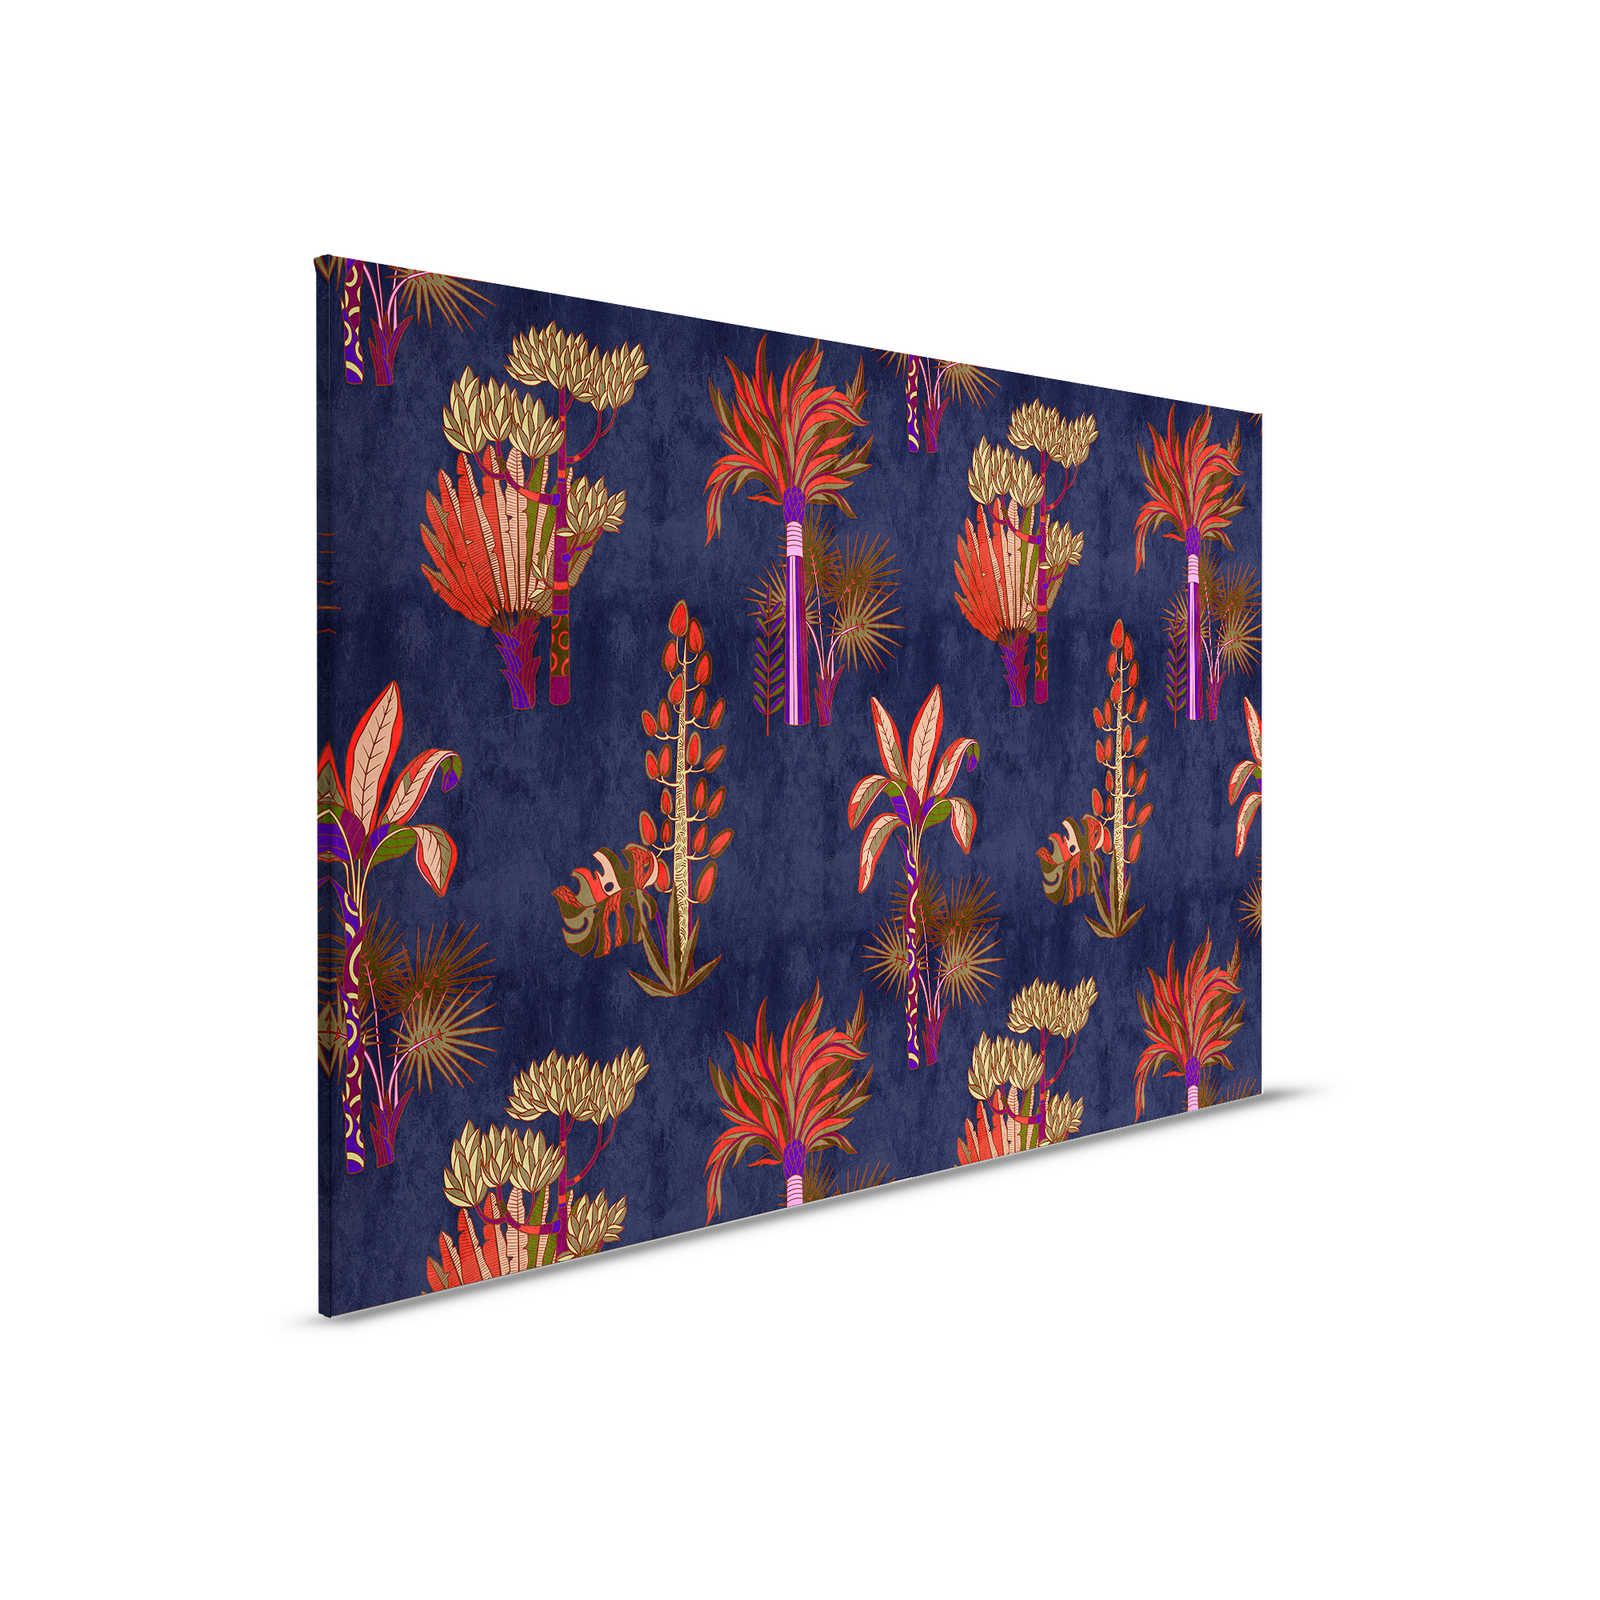 Lagos 2 - Cuadro lienzo Palmeras Sytle africano en colores vivos - 0,90 m x 0,60 m
